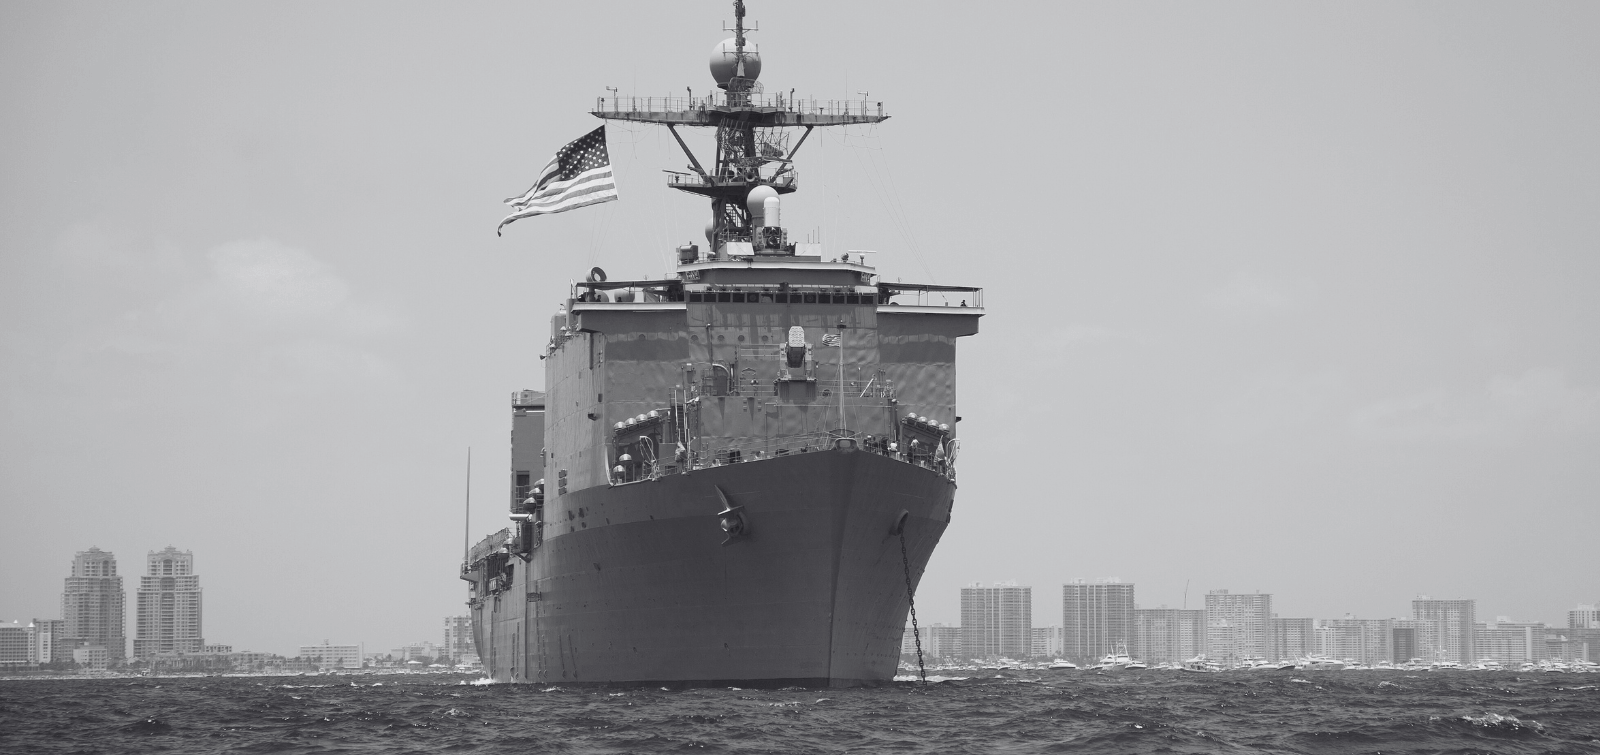 United States Navy ship at sea